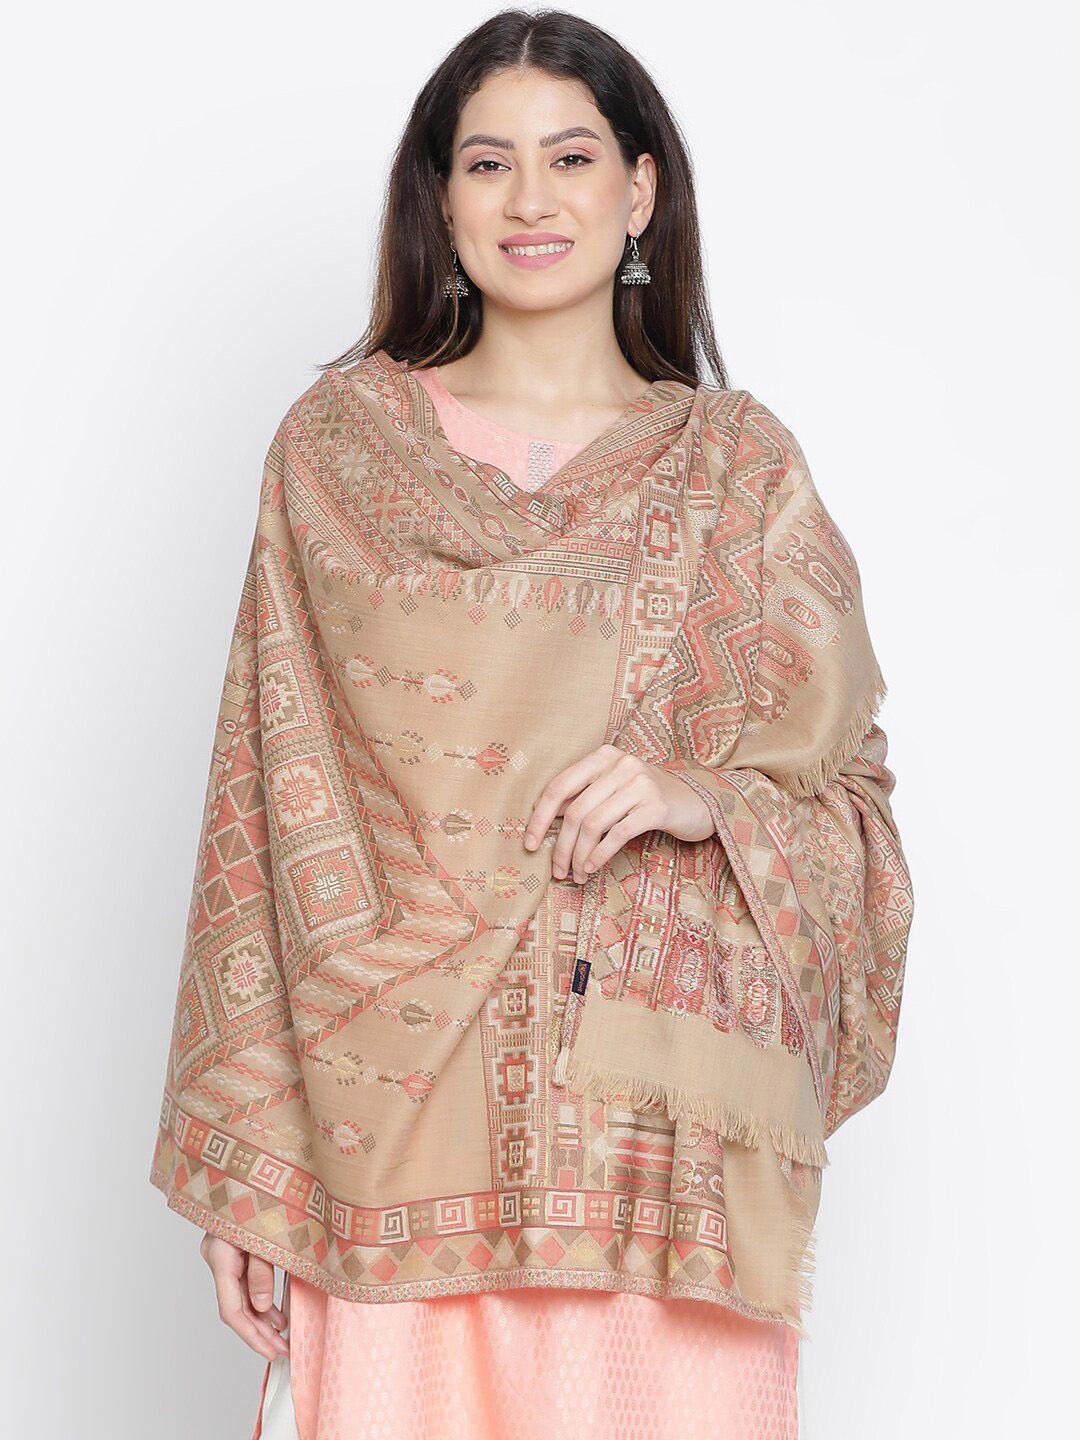 shingora ethnic motifs woven design shawl